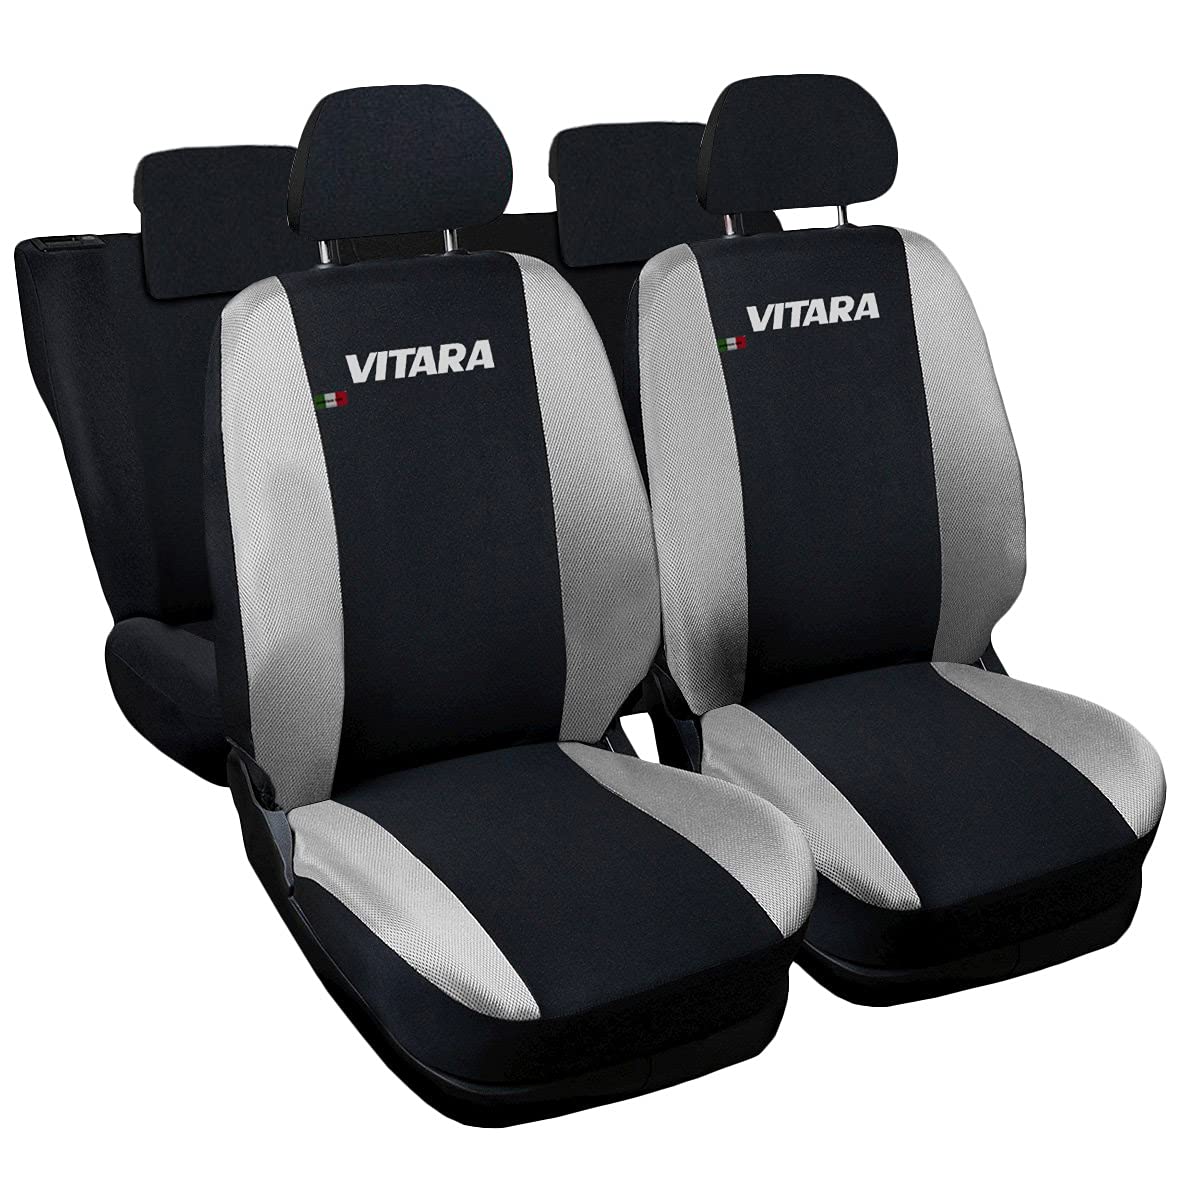 Lupex Shop Autositzbezüge kompatibel mit Vitara, Made in Italy, Polyestergewebe, kompletter Satz Vorder- und Rücksitze (Schwarz - Hellgrau) von Lupex Shop